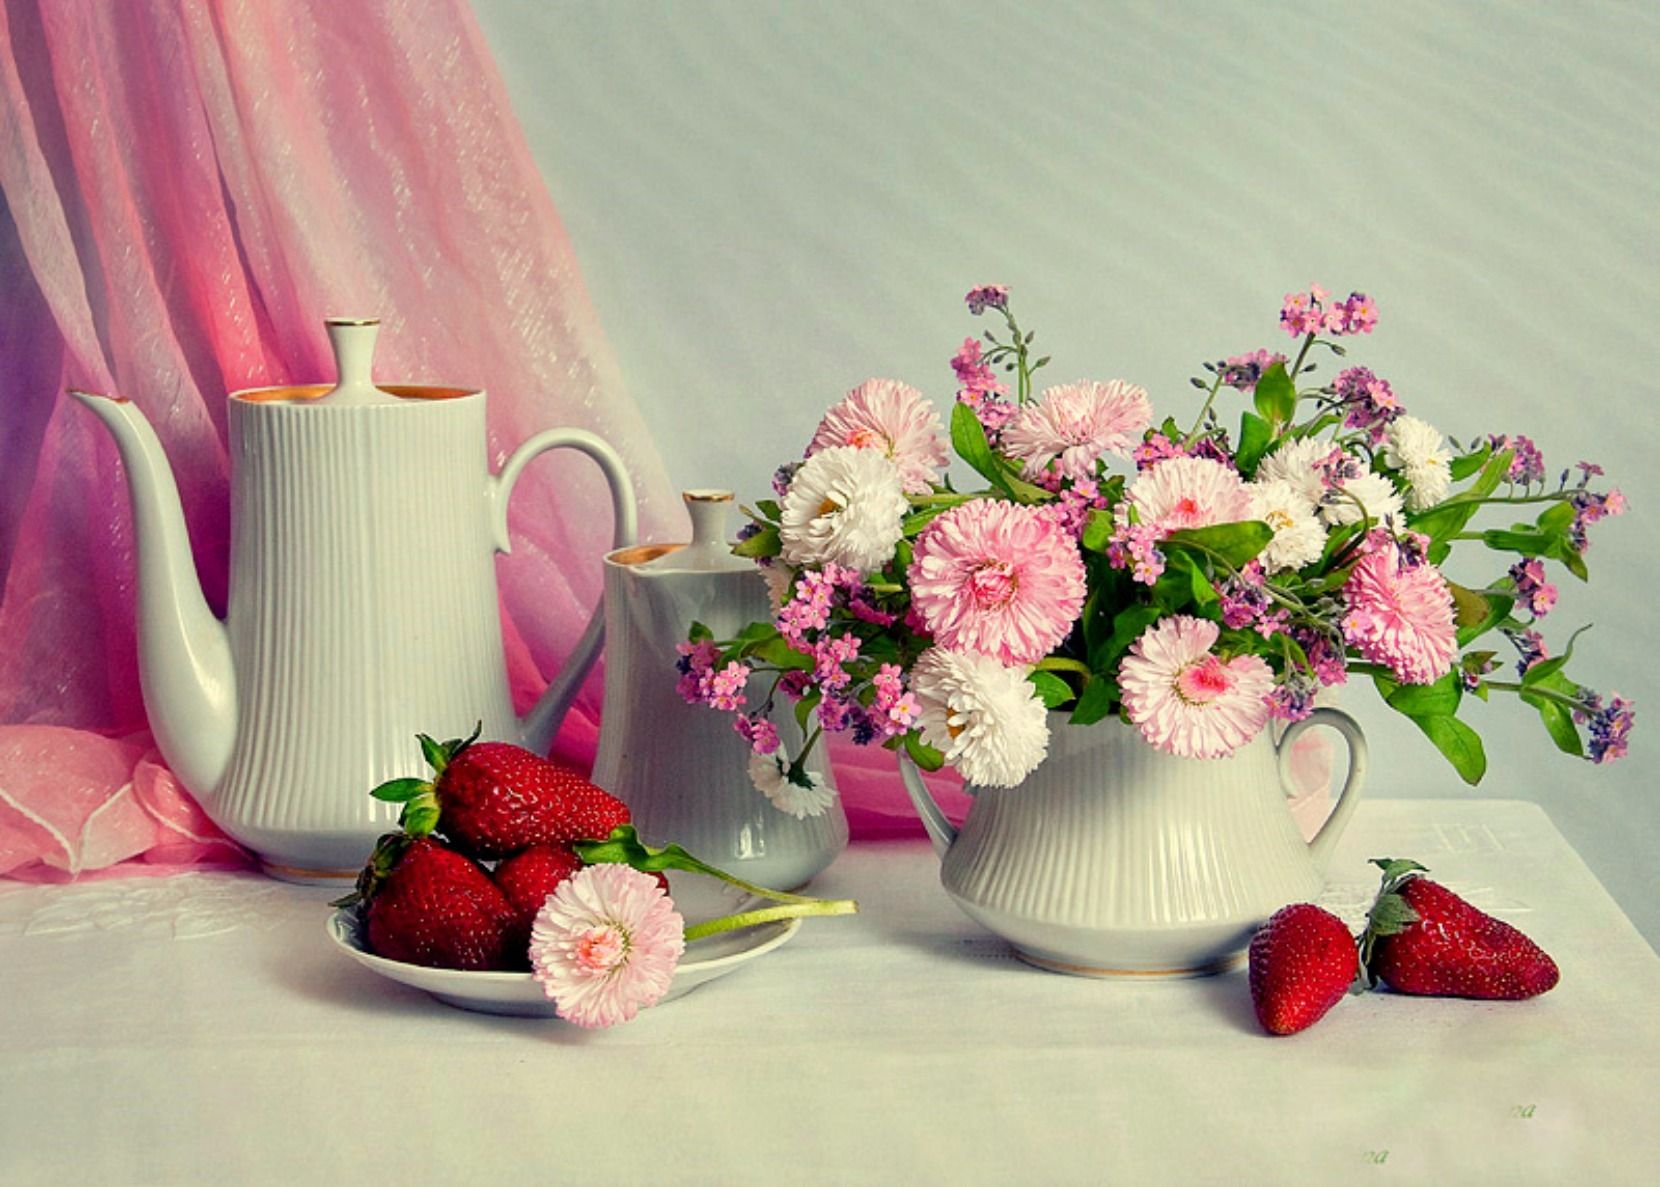 Доброе утро доброго дня и хорошего настроения. Прекрасного утра и настроения. Прекрасный день. Доброе утро прекрасного дня. Открытки с добрым утром с цветами.